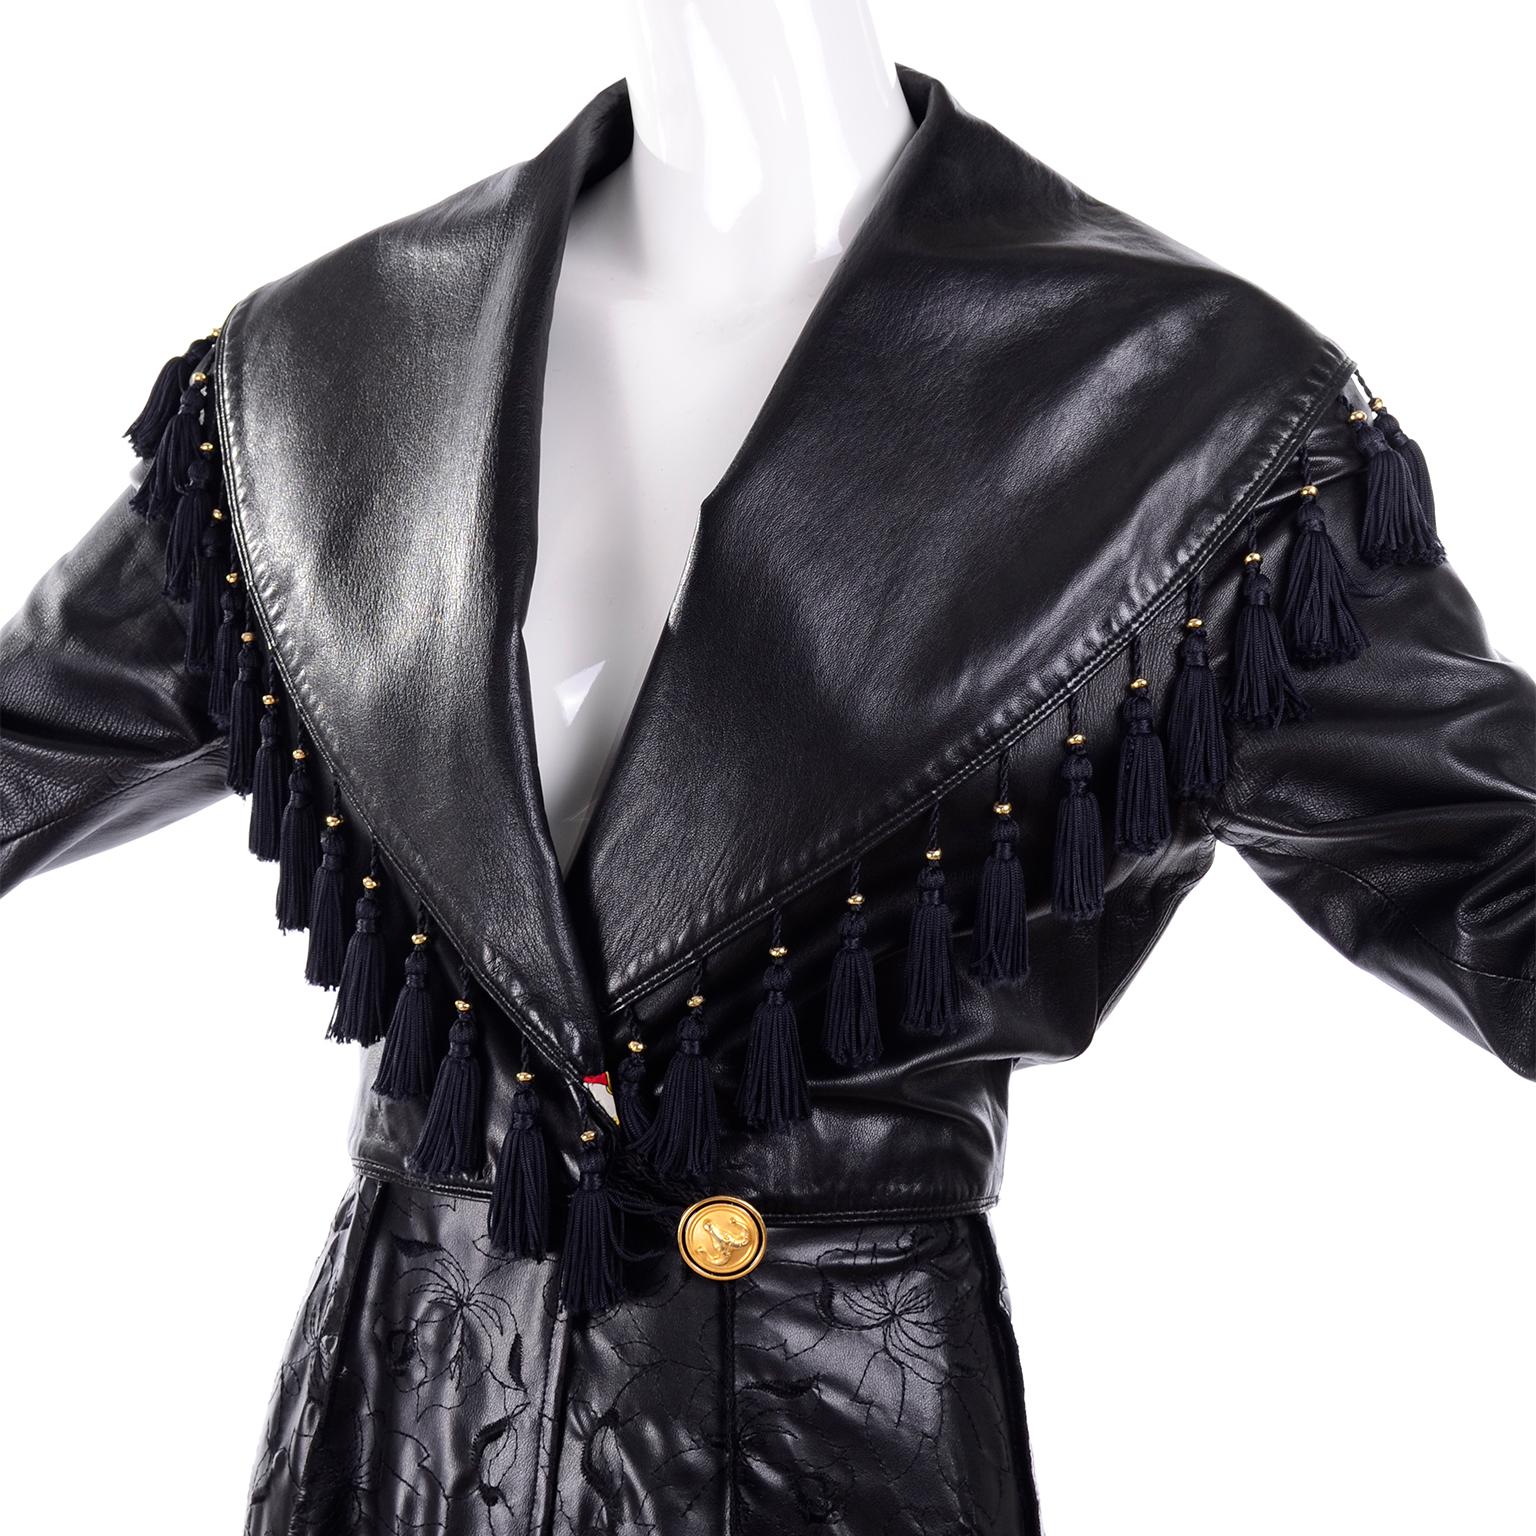 Dies ist ein sehr einzigartiger Vintage Gianni Versace Mantel aus schwarzem Leder mit Quasten. Der Mantel schließt außen mit einem Widderkopfknopf und innen mit einem goldenen Medusenkopfknopf. Der untere Teil des Mantels besteht aus besticktem